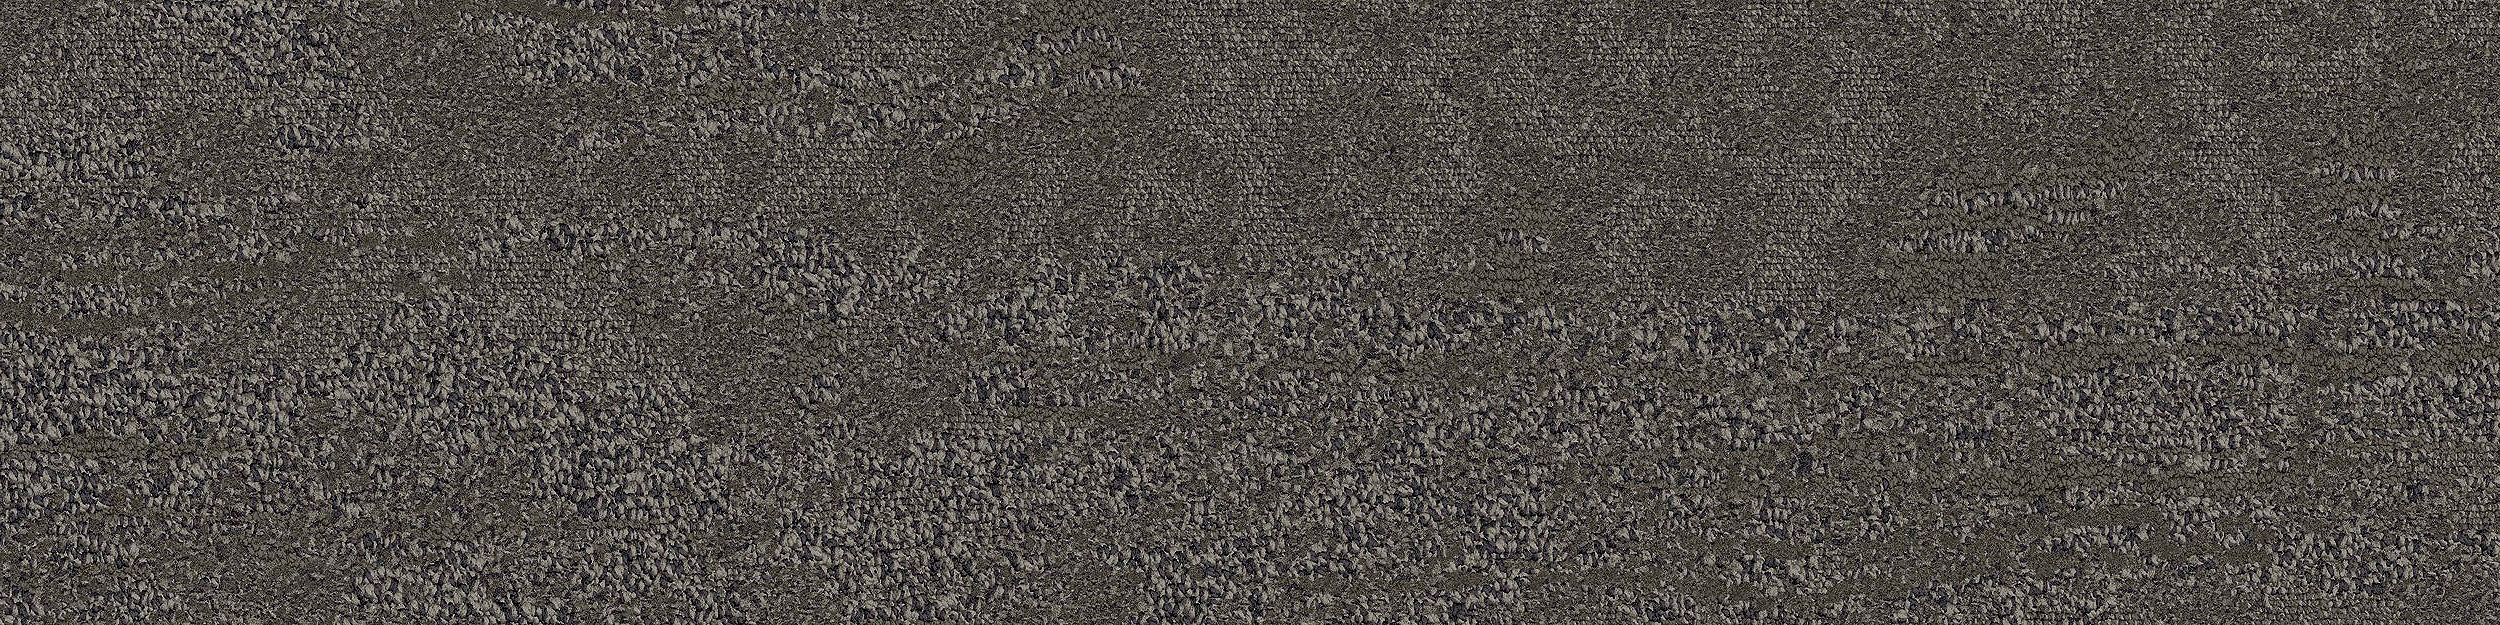 NS230 Carpet Tile In Ginseng imagen número 2